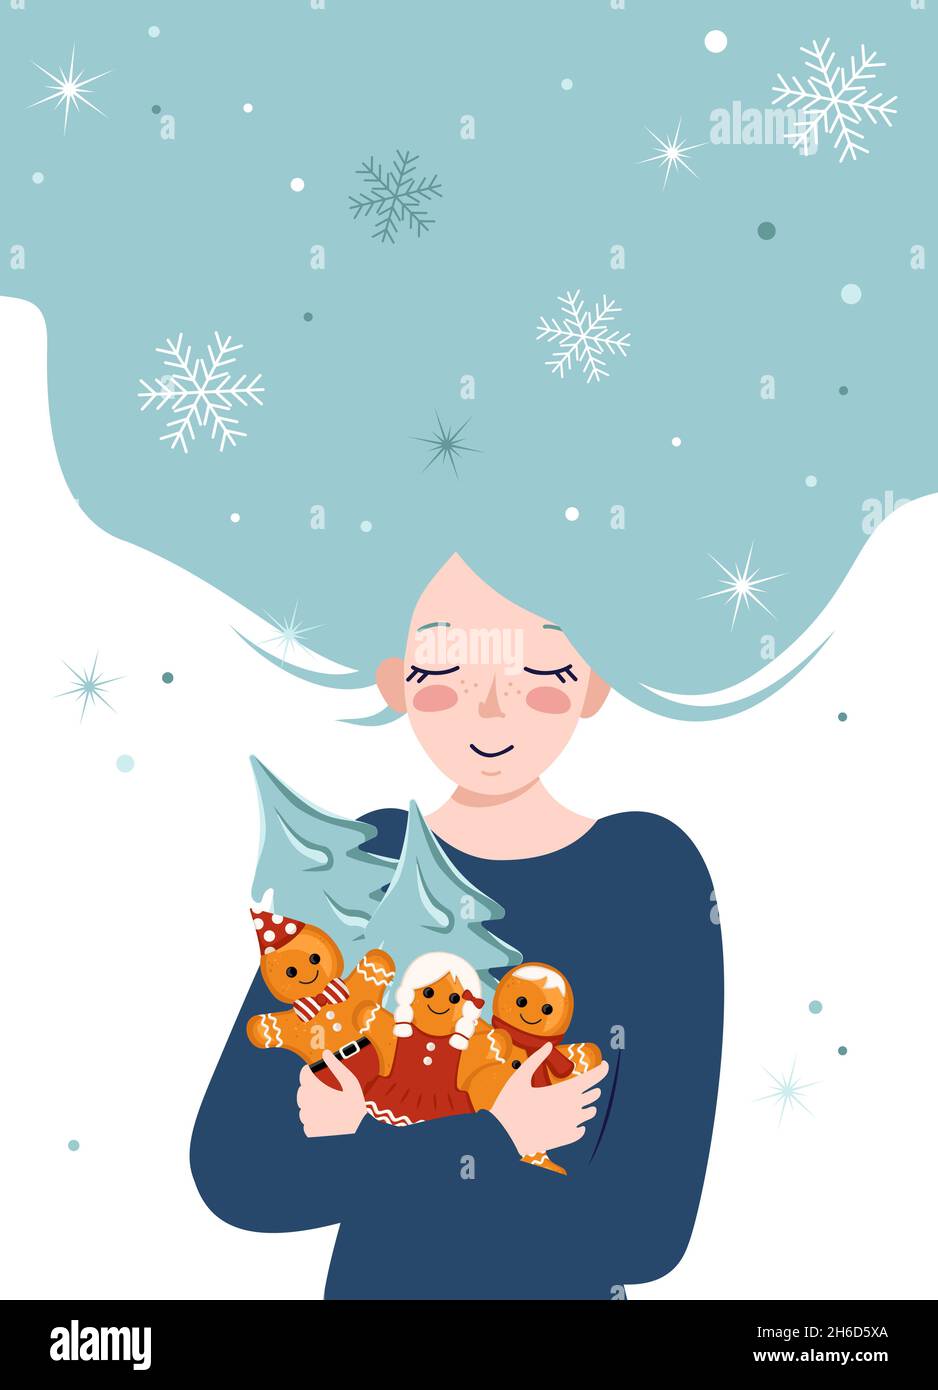 Giovane donna con capelli blu abbraccia decorazioni per Capodanno e Natale di uomini e albero pan di zenzero. La ragazza felice sta aspettando l'inverno. Cartolina delle vacanze Illustrazione Vettoriale